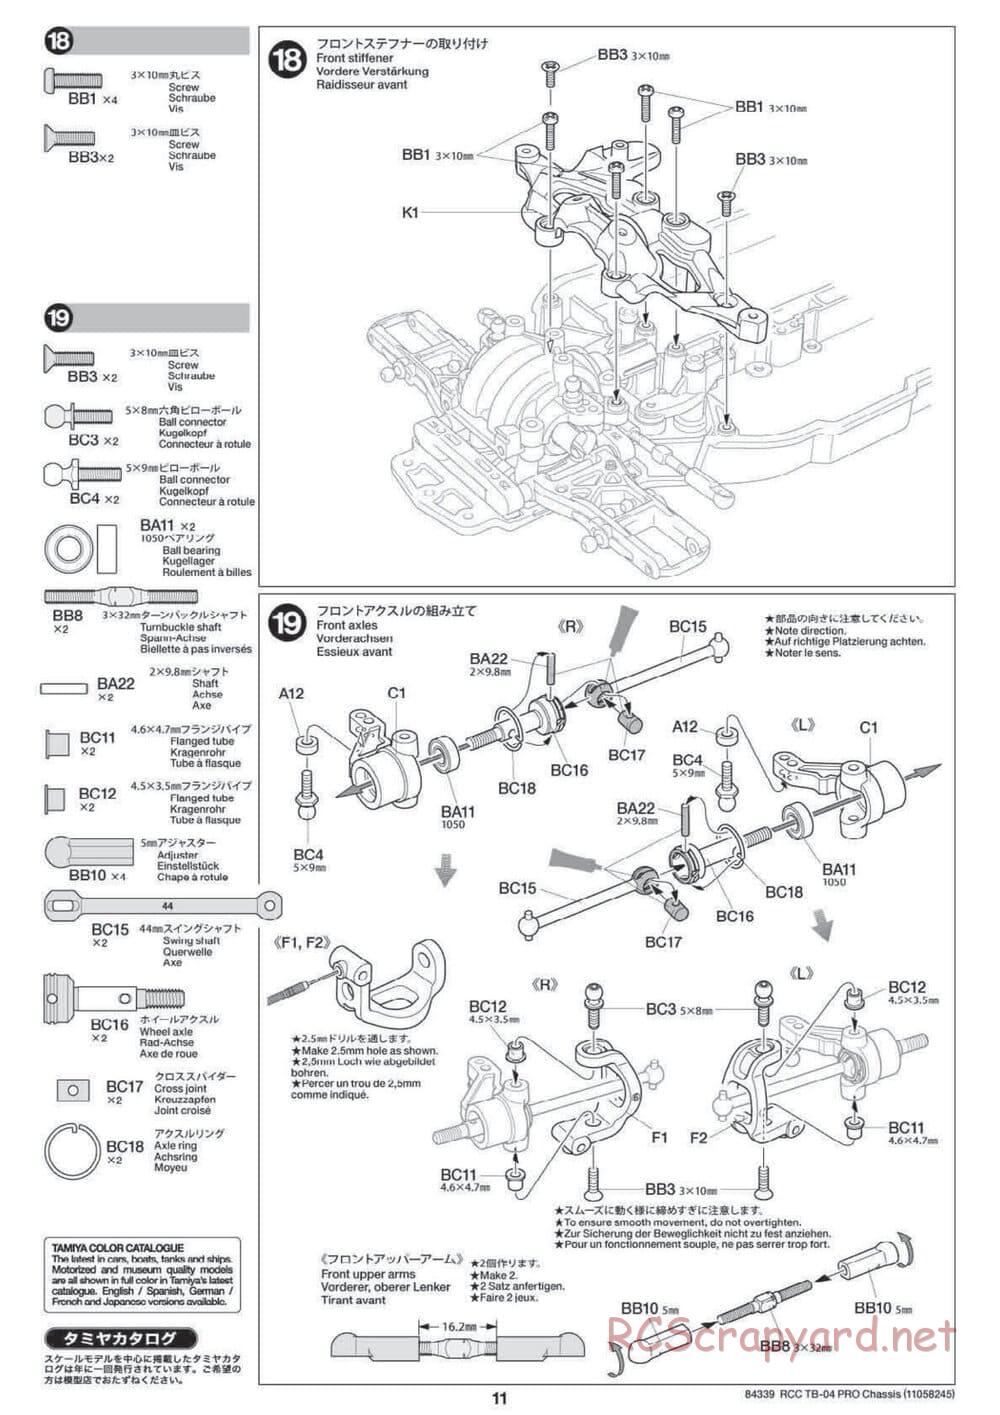 Tamiya - TB-04 Pro Chassis - Manual - Page 11